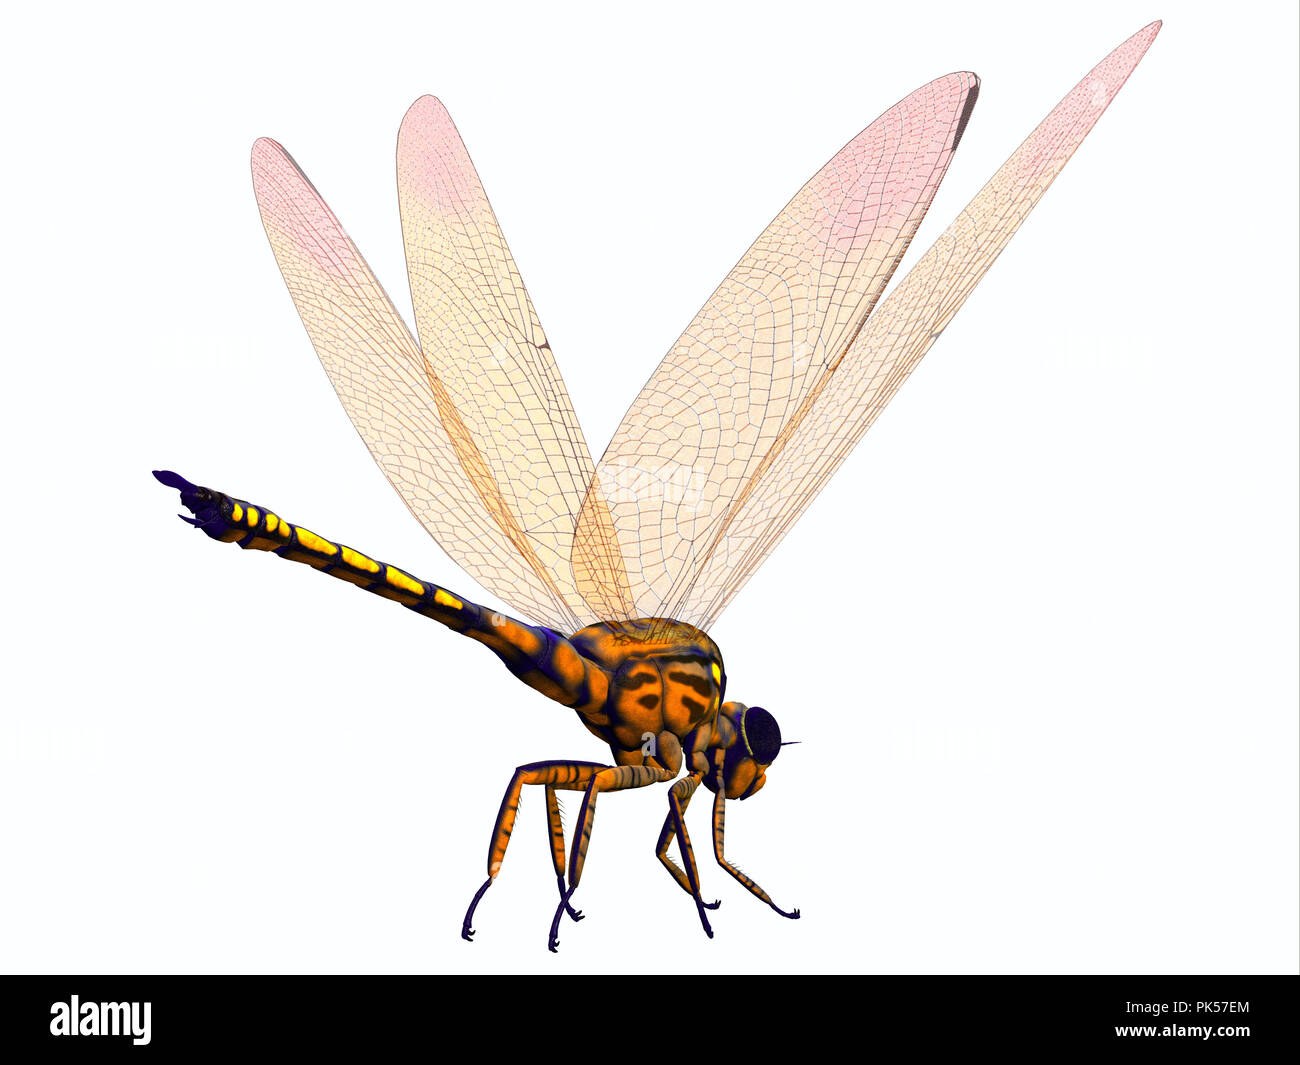 Meganeura Dragonfly - meganeura war extrem große fleischfressende Libelle Insekten, die in Frankreich und England während der Steinkohlenzeit entstanden lebte. Stockfoto